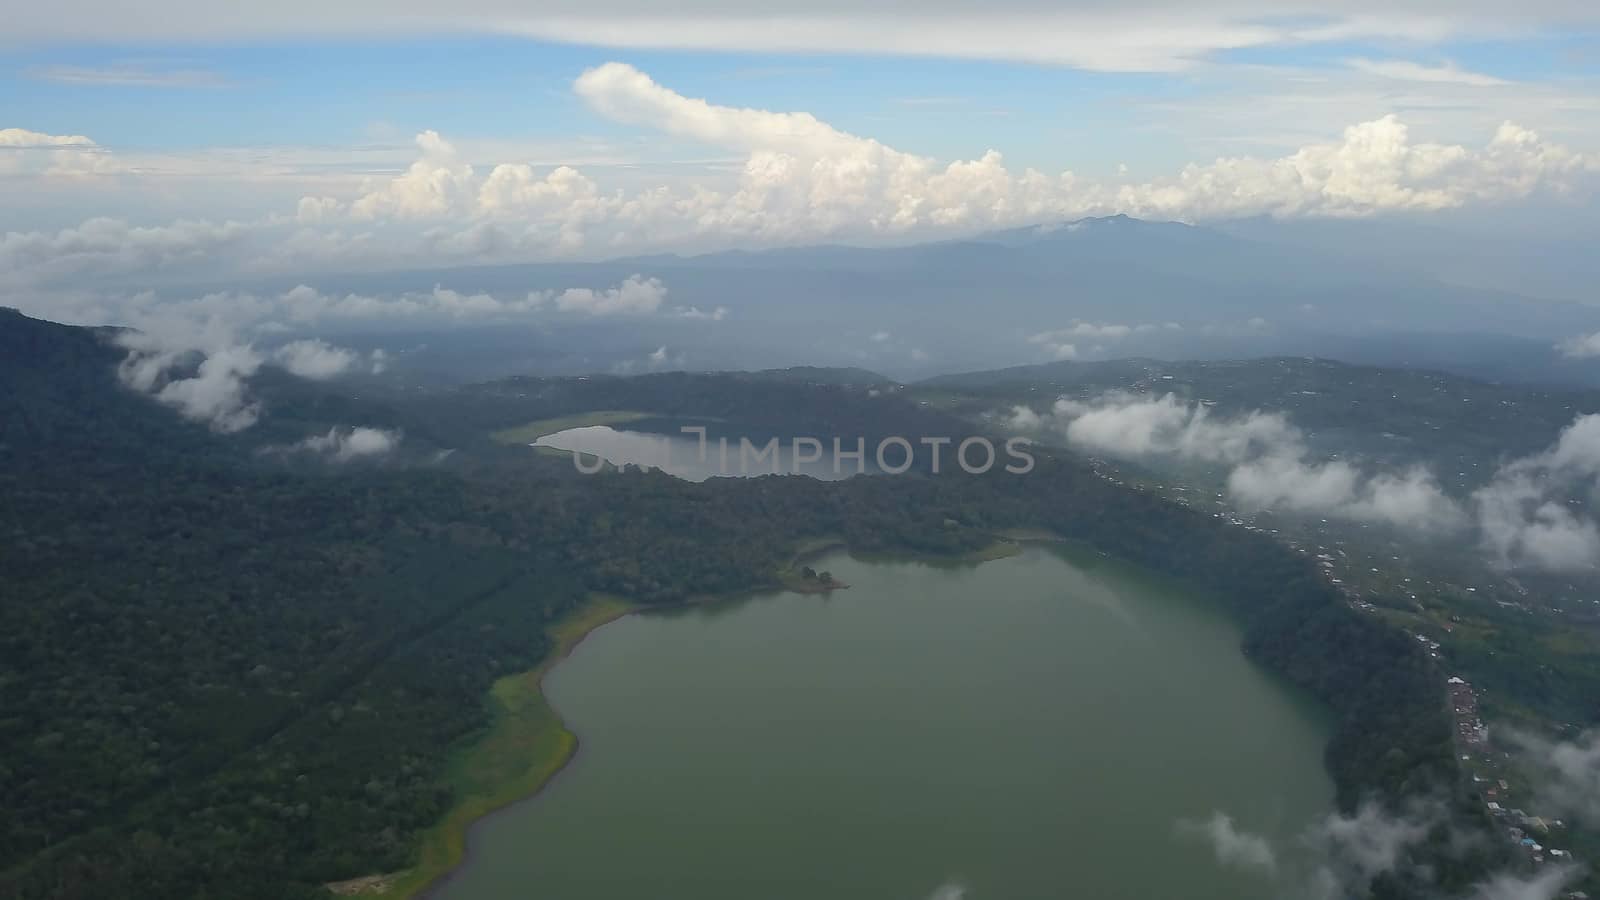 Panoramic aerial view of beautiful twin lakes in an ancient volcanic caldera. Lakes Buyan and Tamblingan, Bali, Indonesia by Sanatana2008